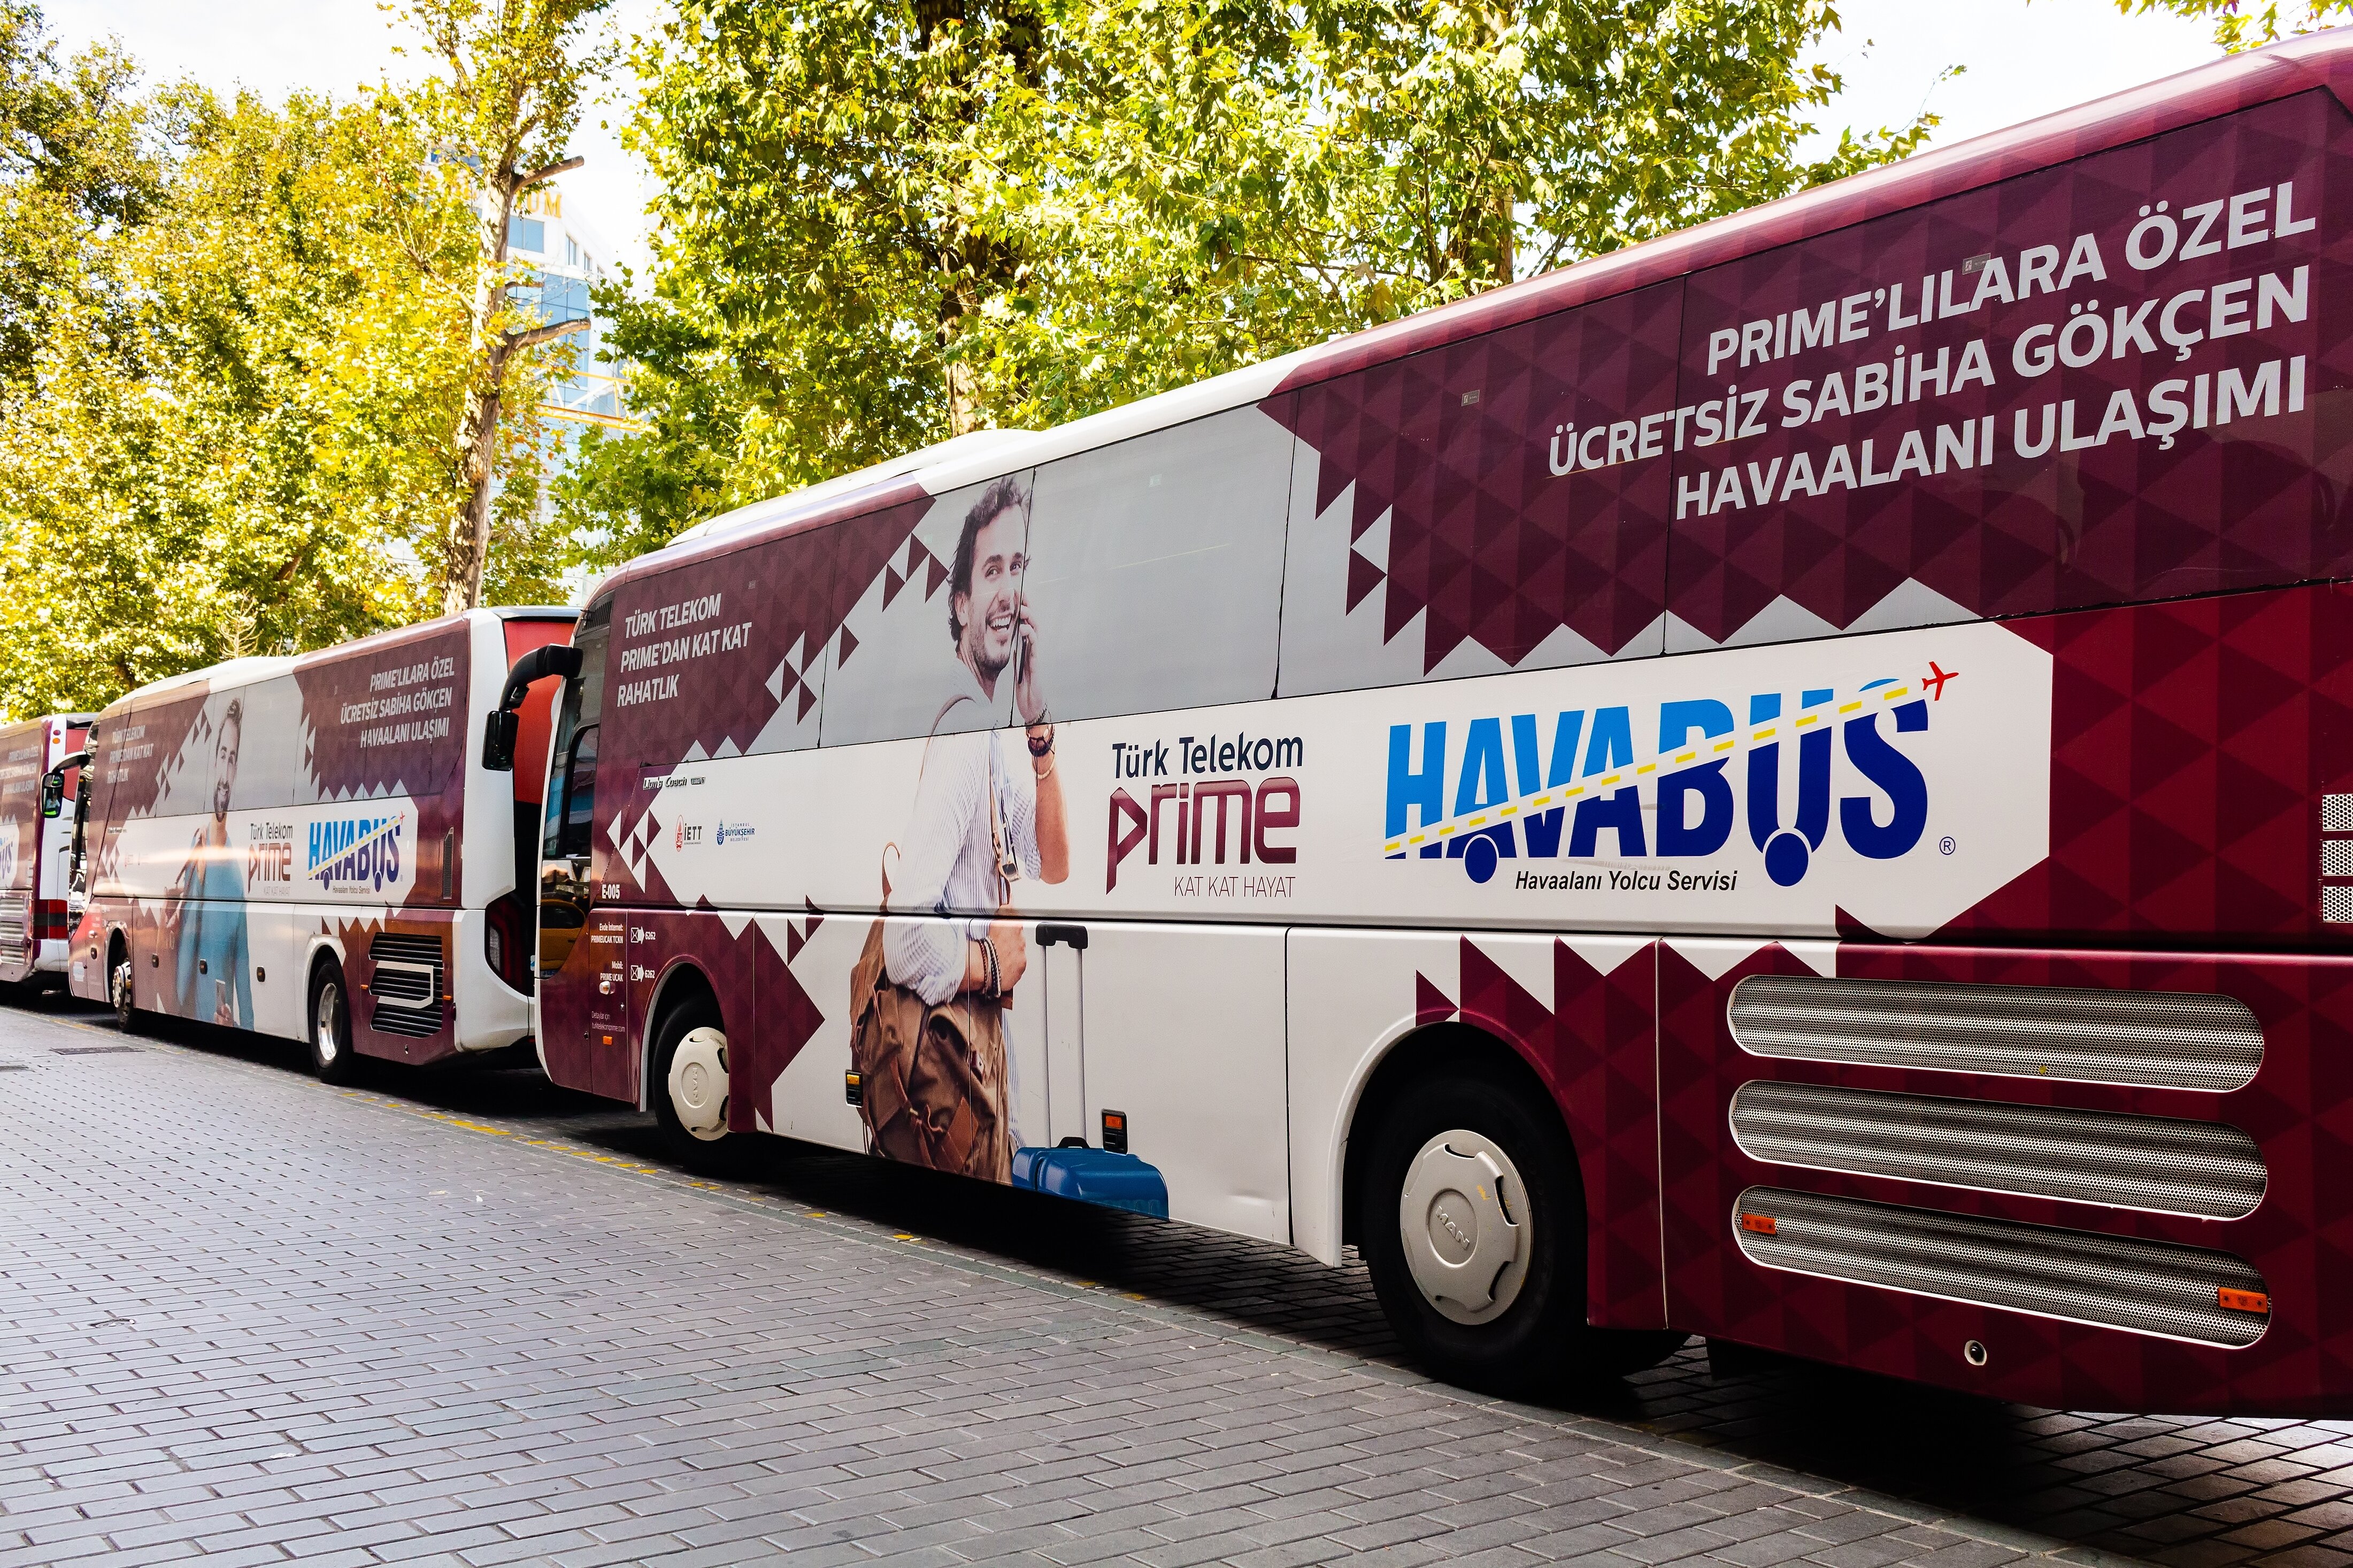 Автобусы Havabus ходят каждые полчаса.